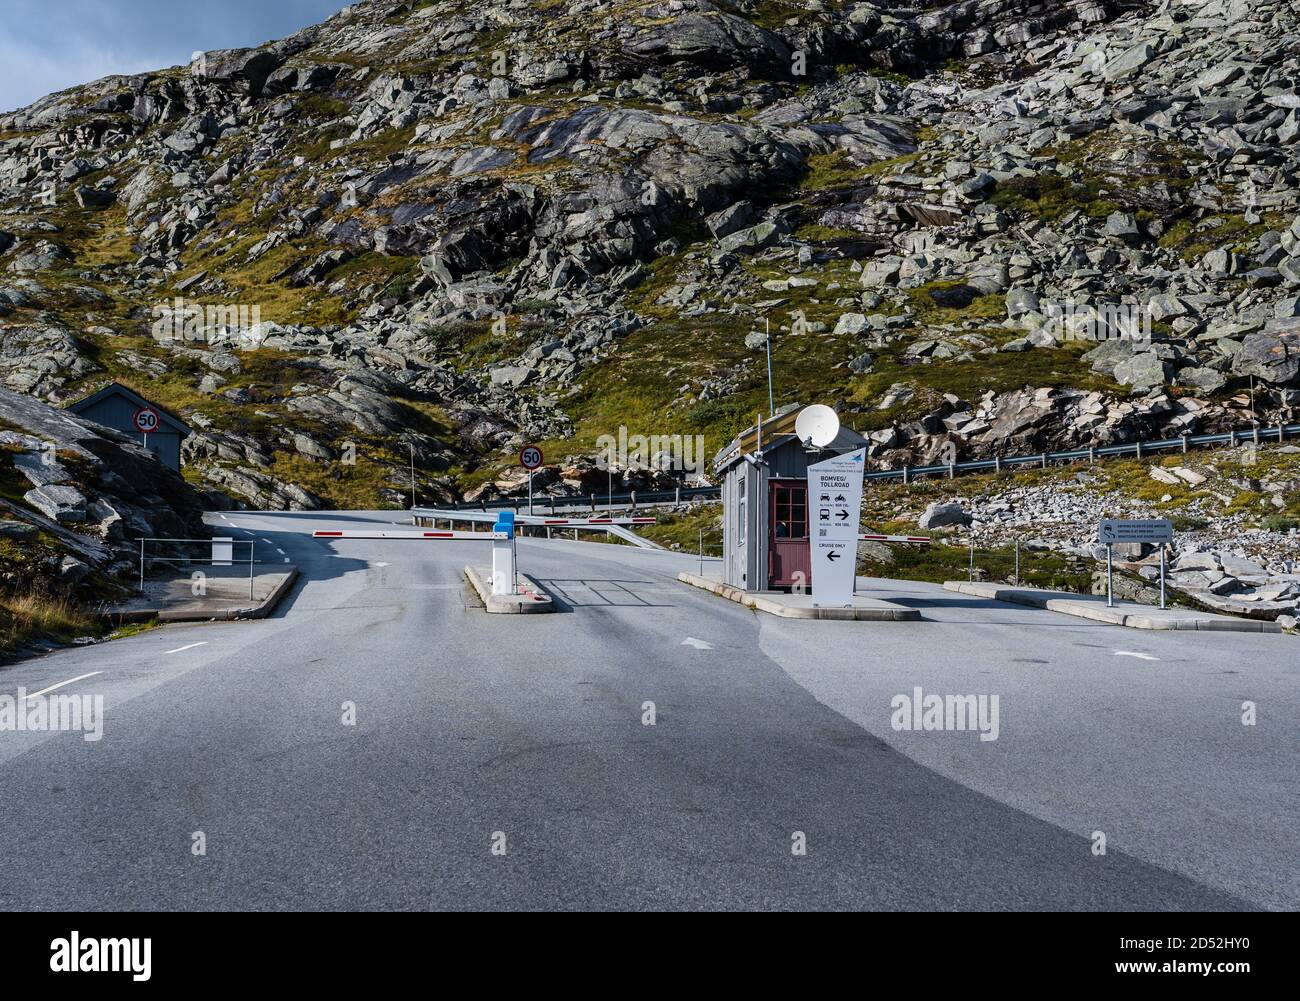 Vide à péage à l'entrée de la route de Dalsnibba sommet de montagne, Norvège Banque D'Images